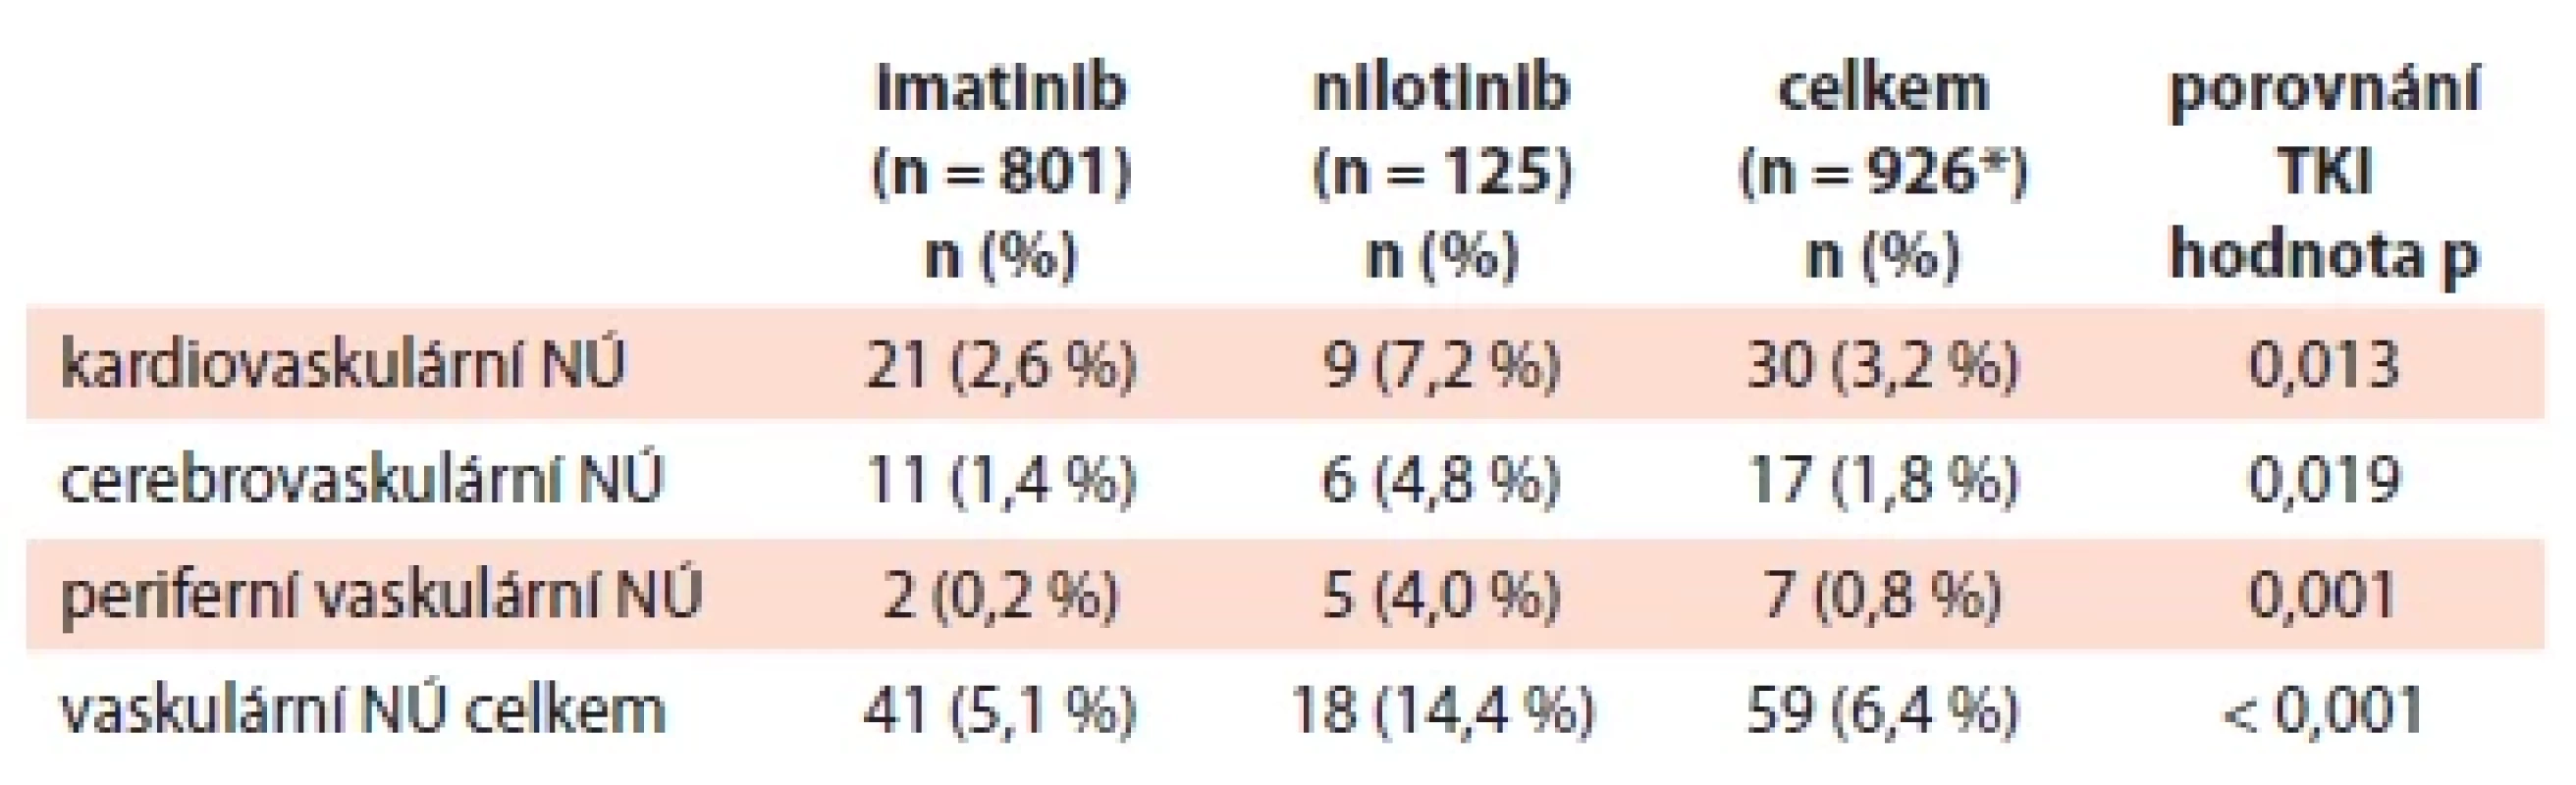 Přímé porovnání cévních nežádoucích účinků u pacientů
v chronické fázi při léčbě imatinibem nebo nilotinibem v 1. linii.